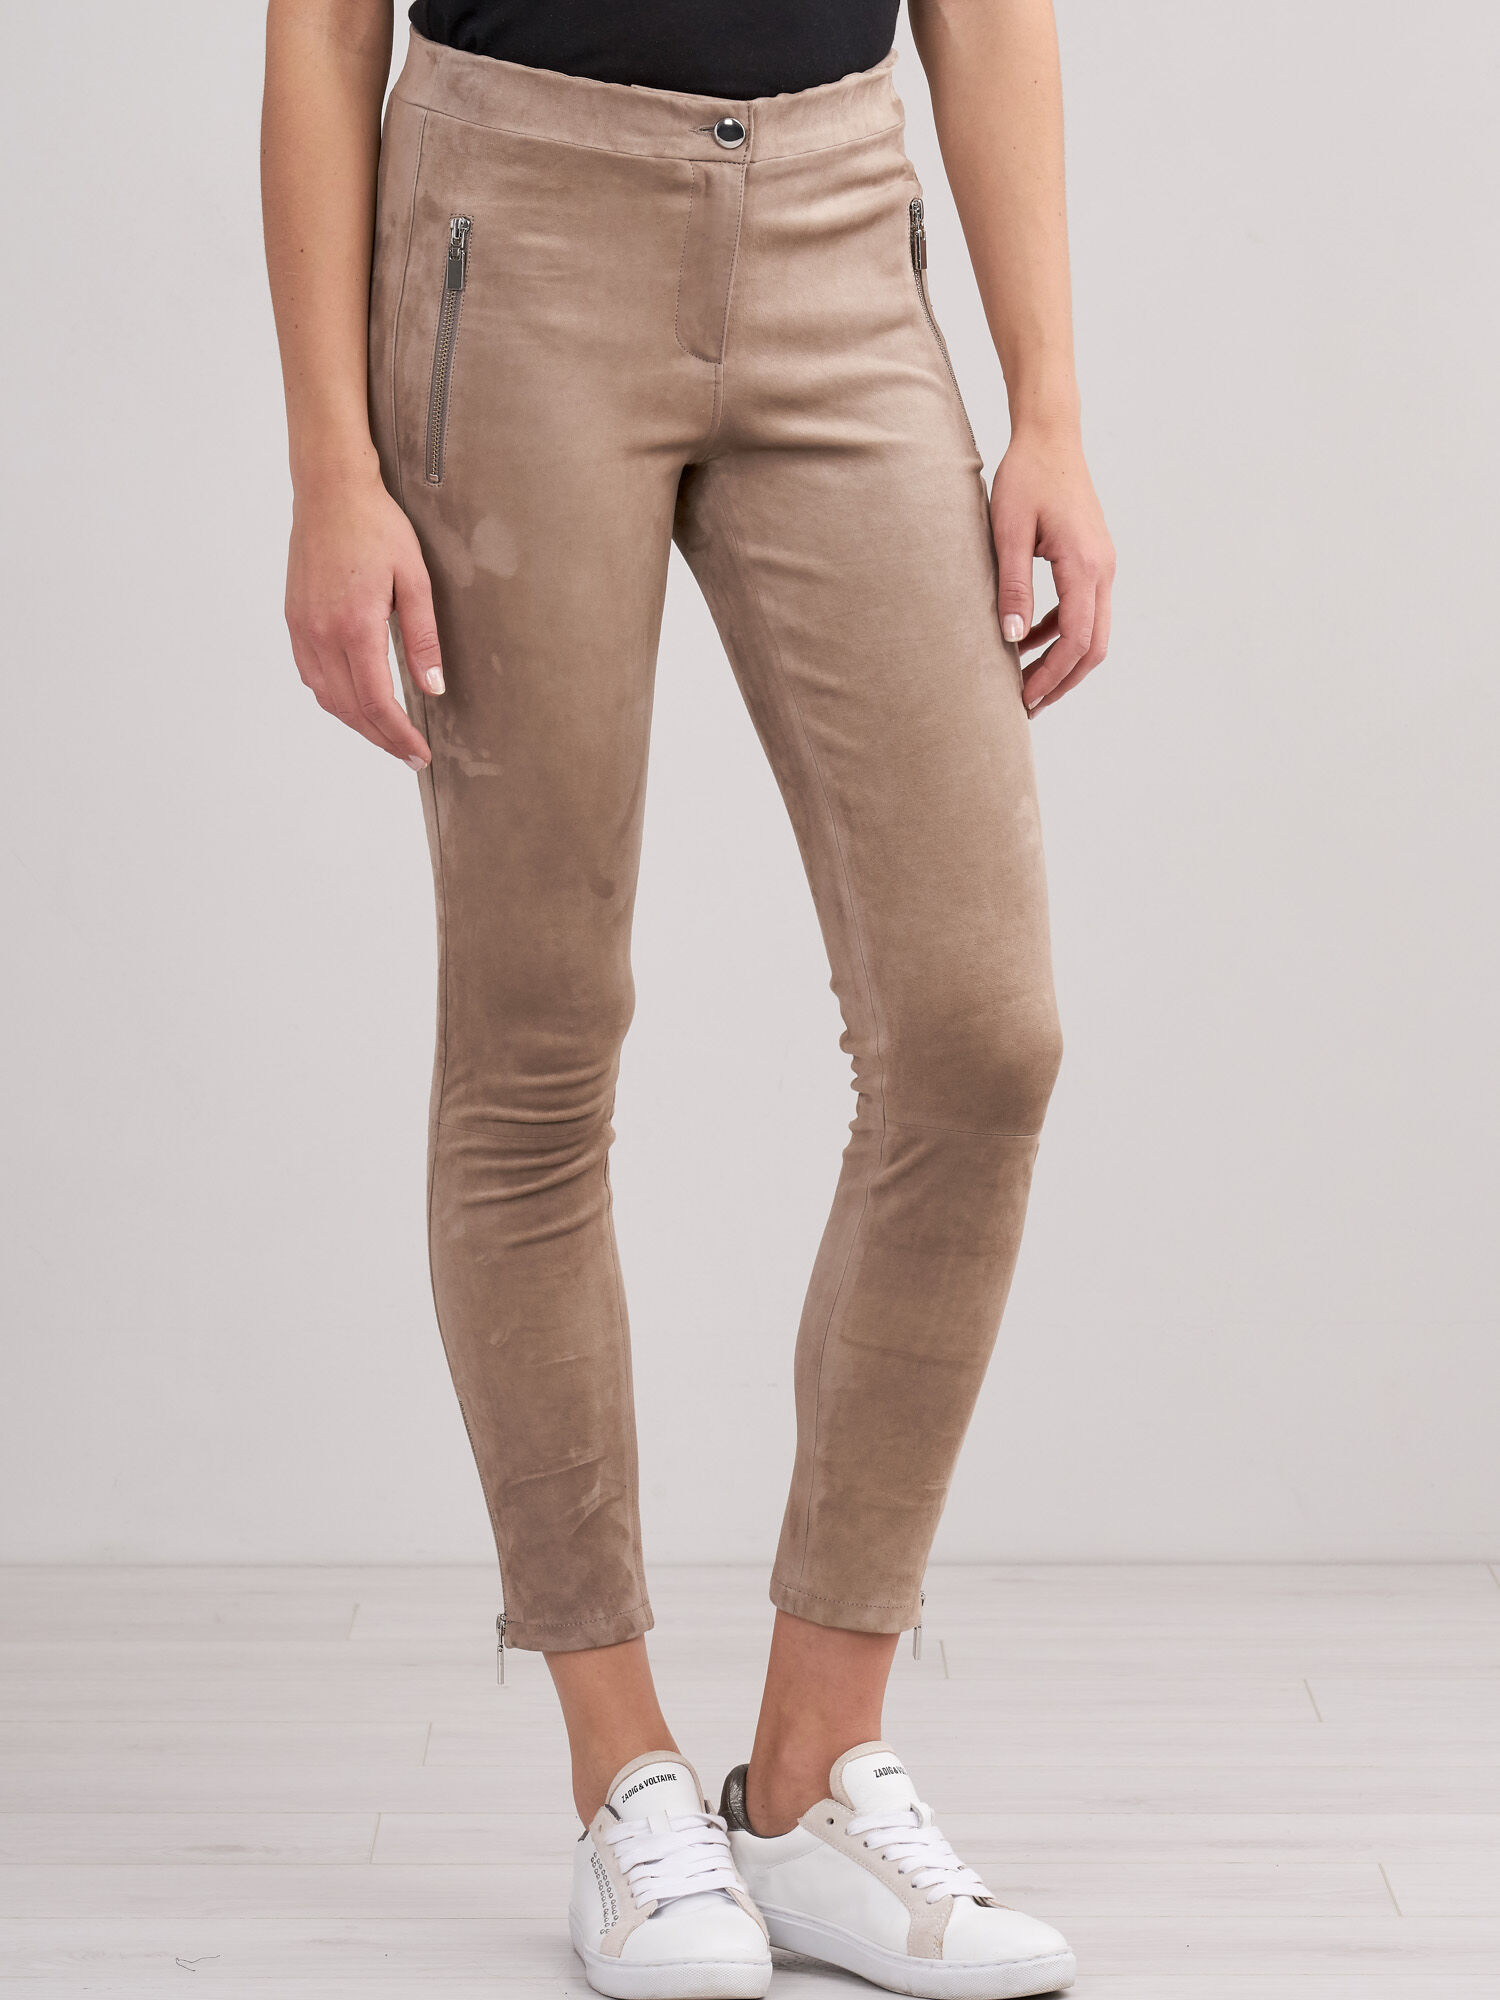 Ralph Lauren Suede Leather Pants for Women  Mercari